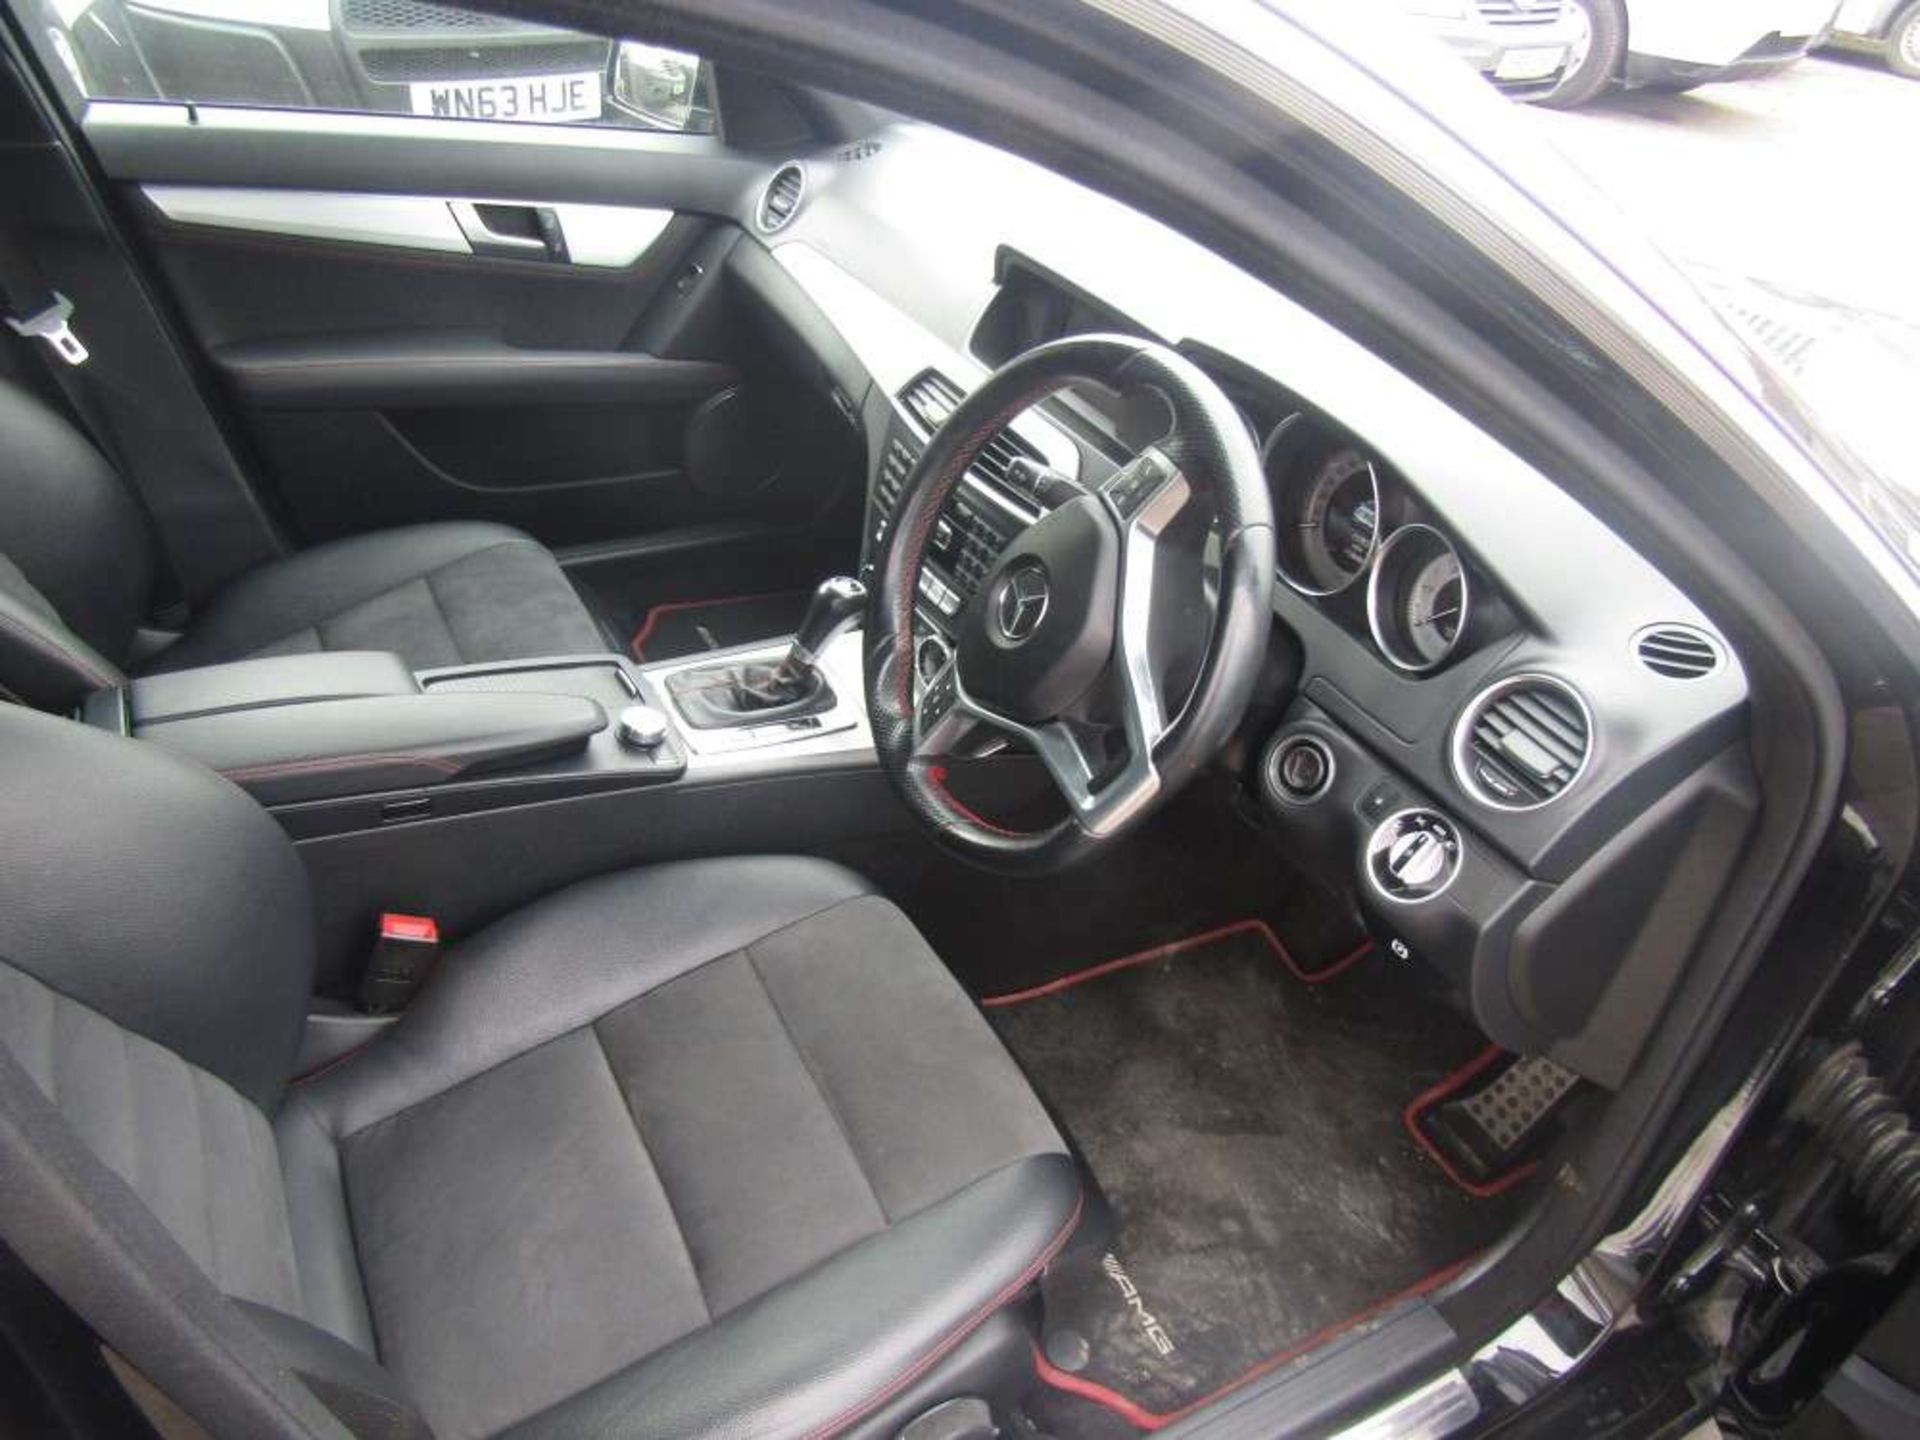 2013 63 reg Mercedes C220 AMG Sport+ CDI Blue-CY A (On VCAR Cat N) - Image 5 of 6